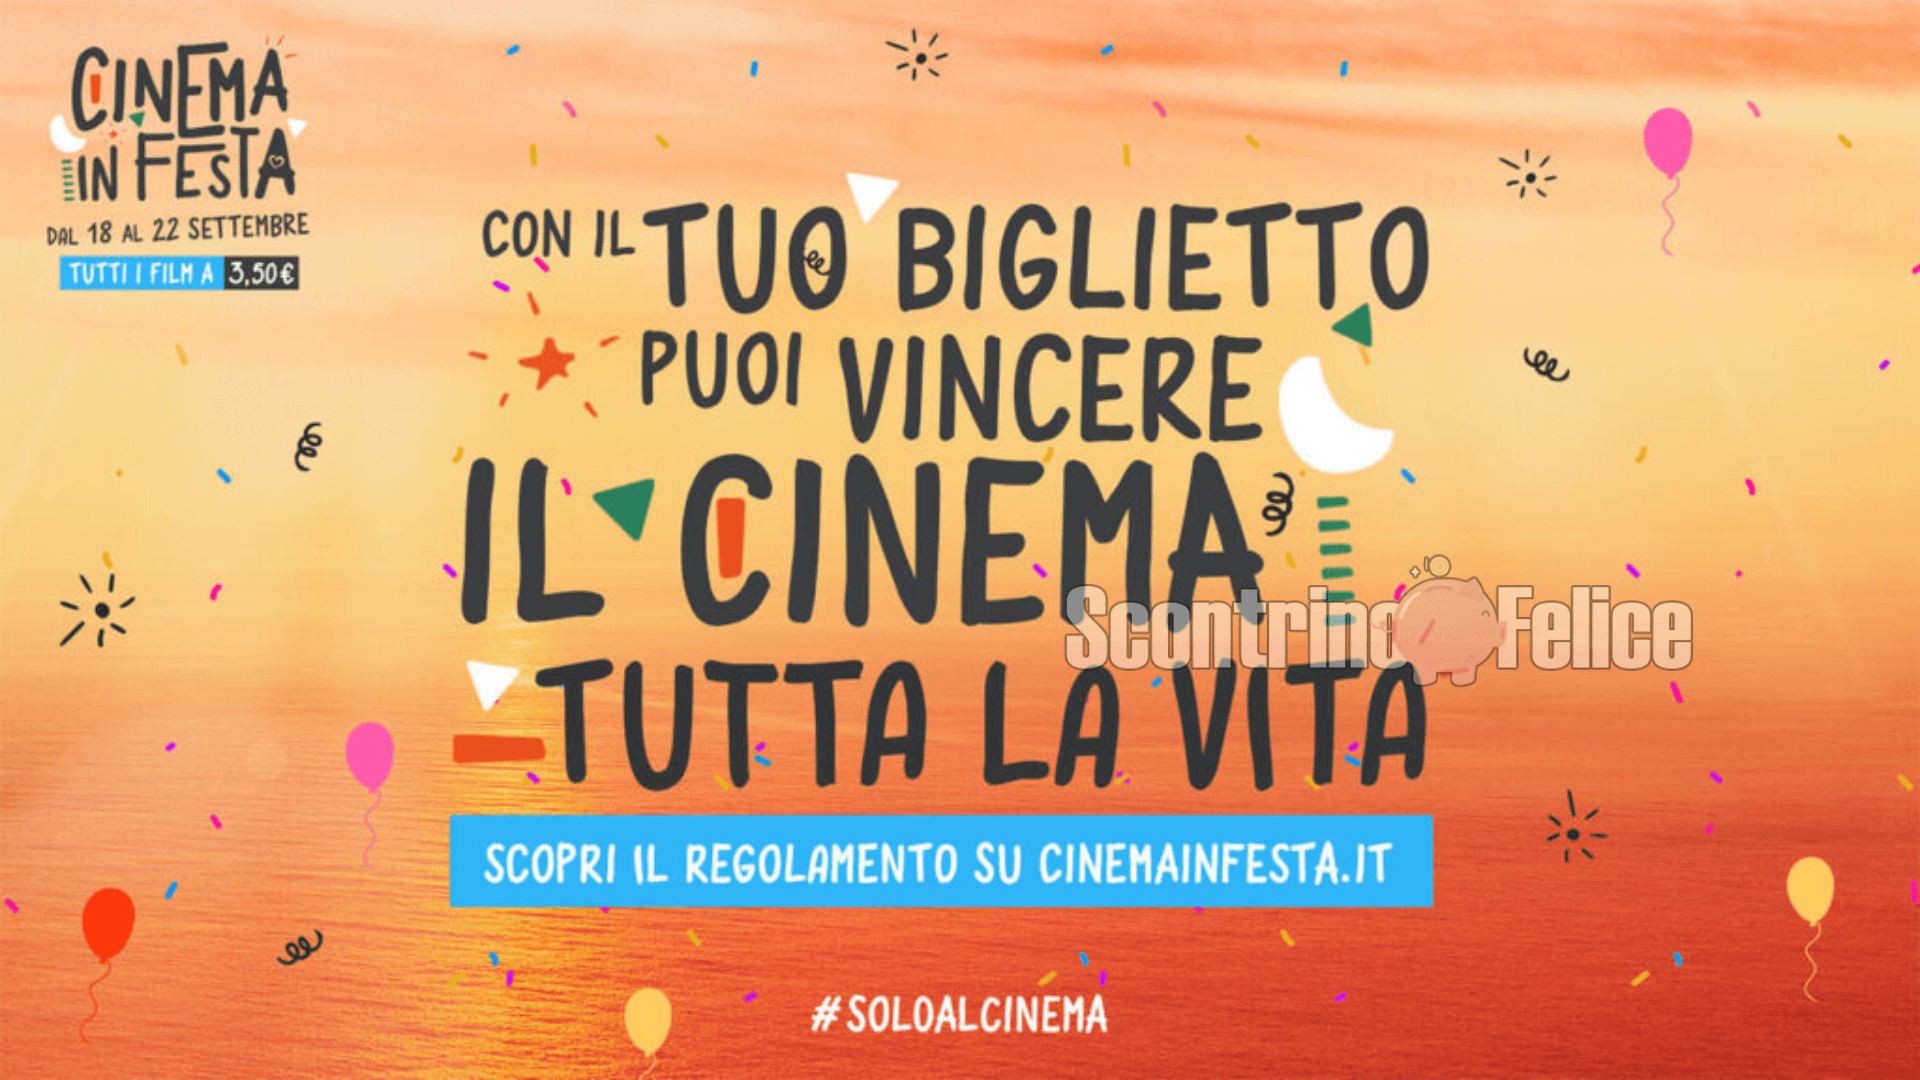 Cinema in Festa 2022: biglietti a solo 3,50 euro e vinci cinema GRATIS per tutta la vita! 2